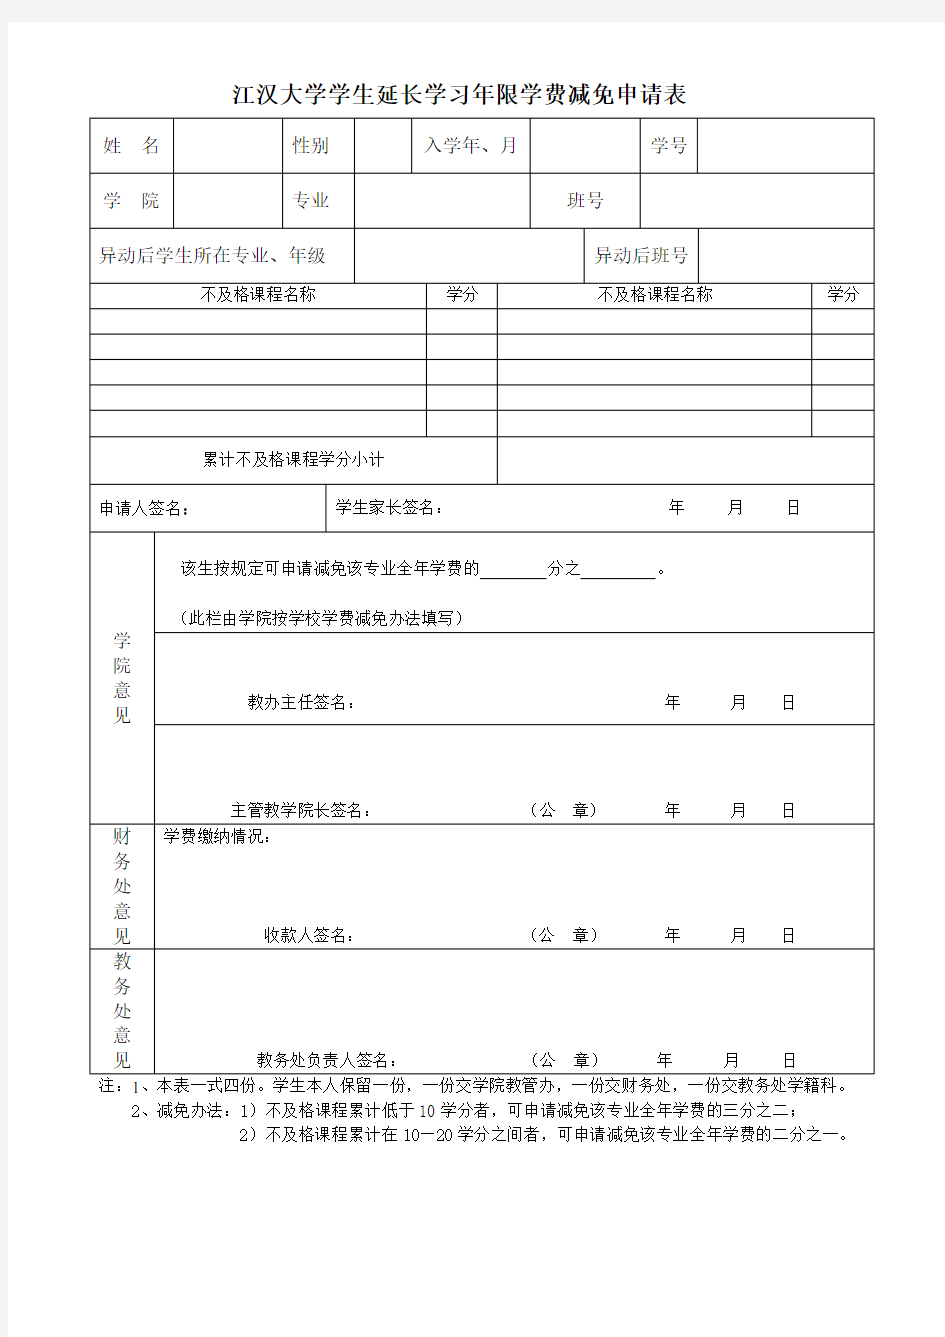 江汉大学学生延长学习年限学费减免申请表